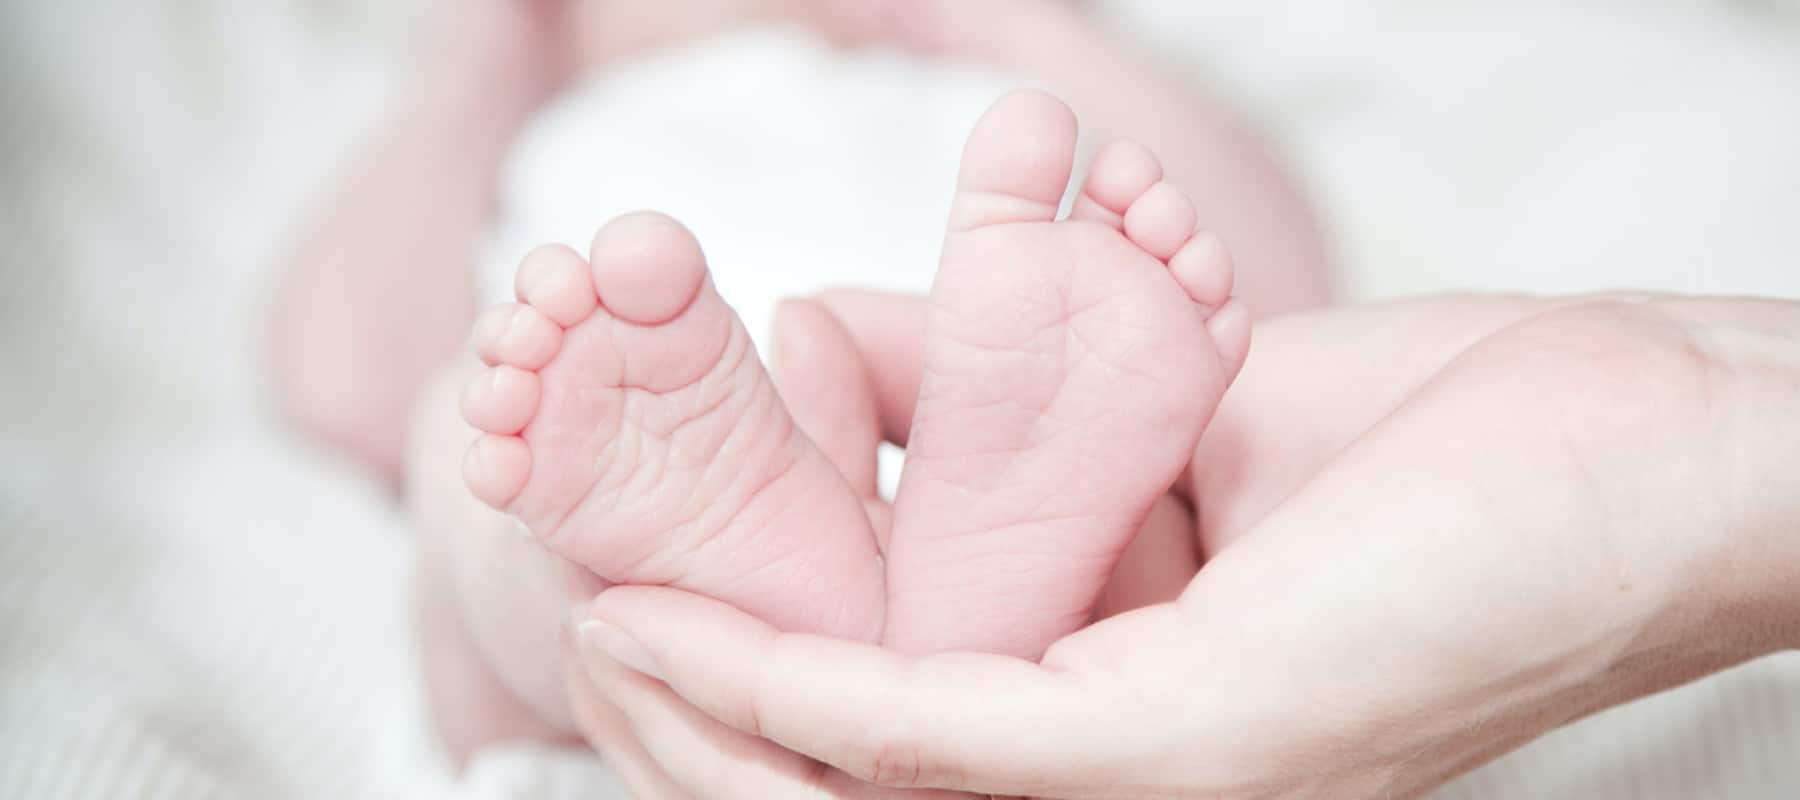 Mon bébé vient de naître, quels sont les premiers soins ?